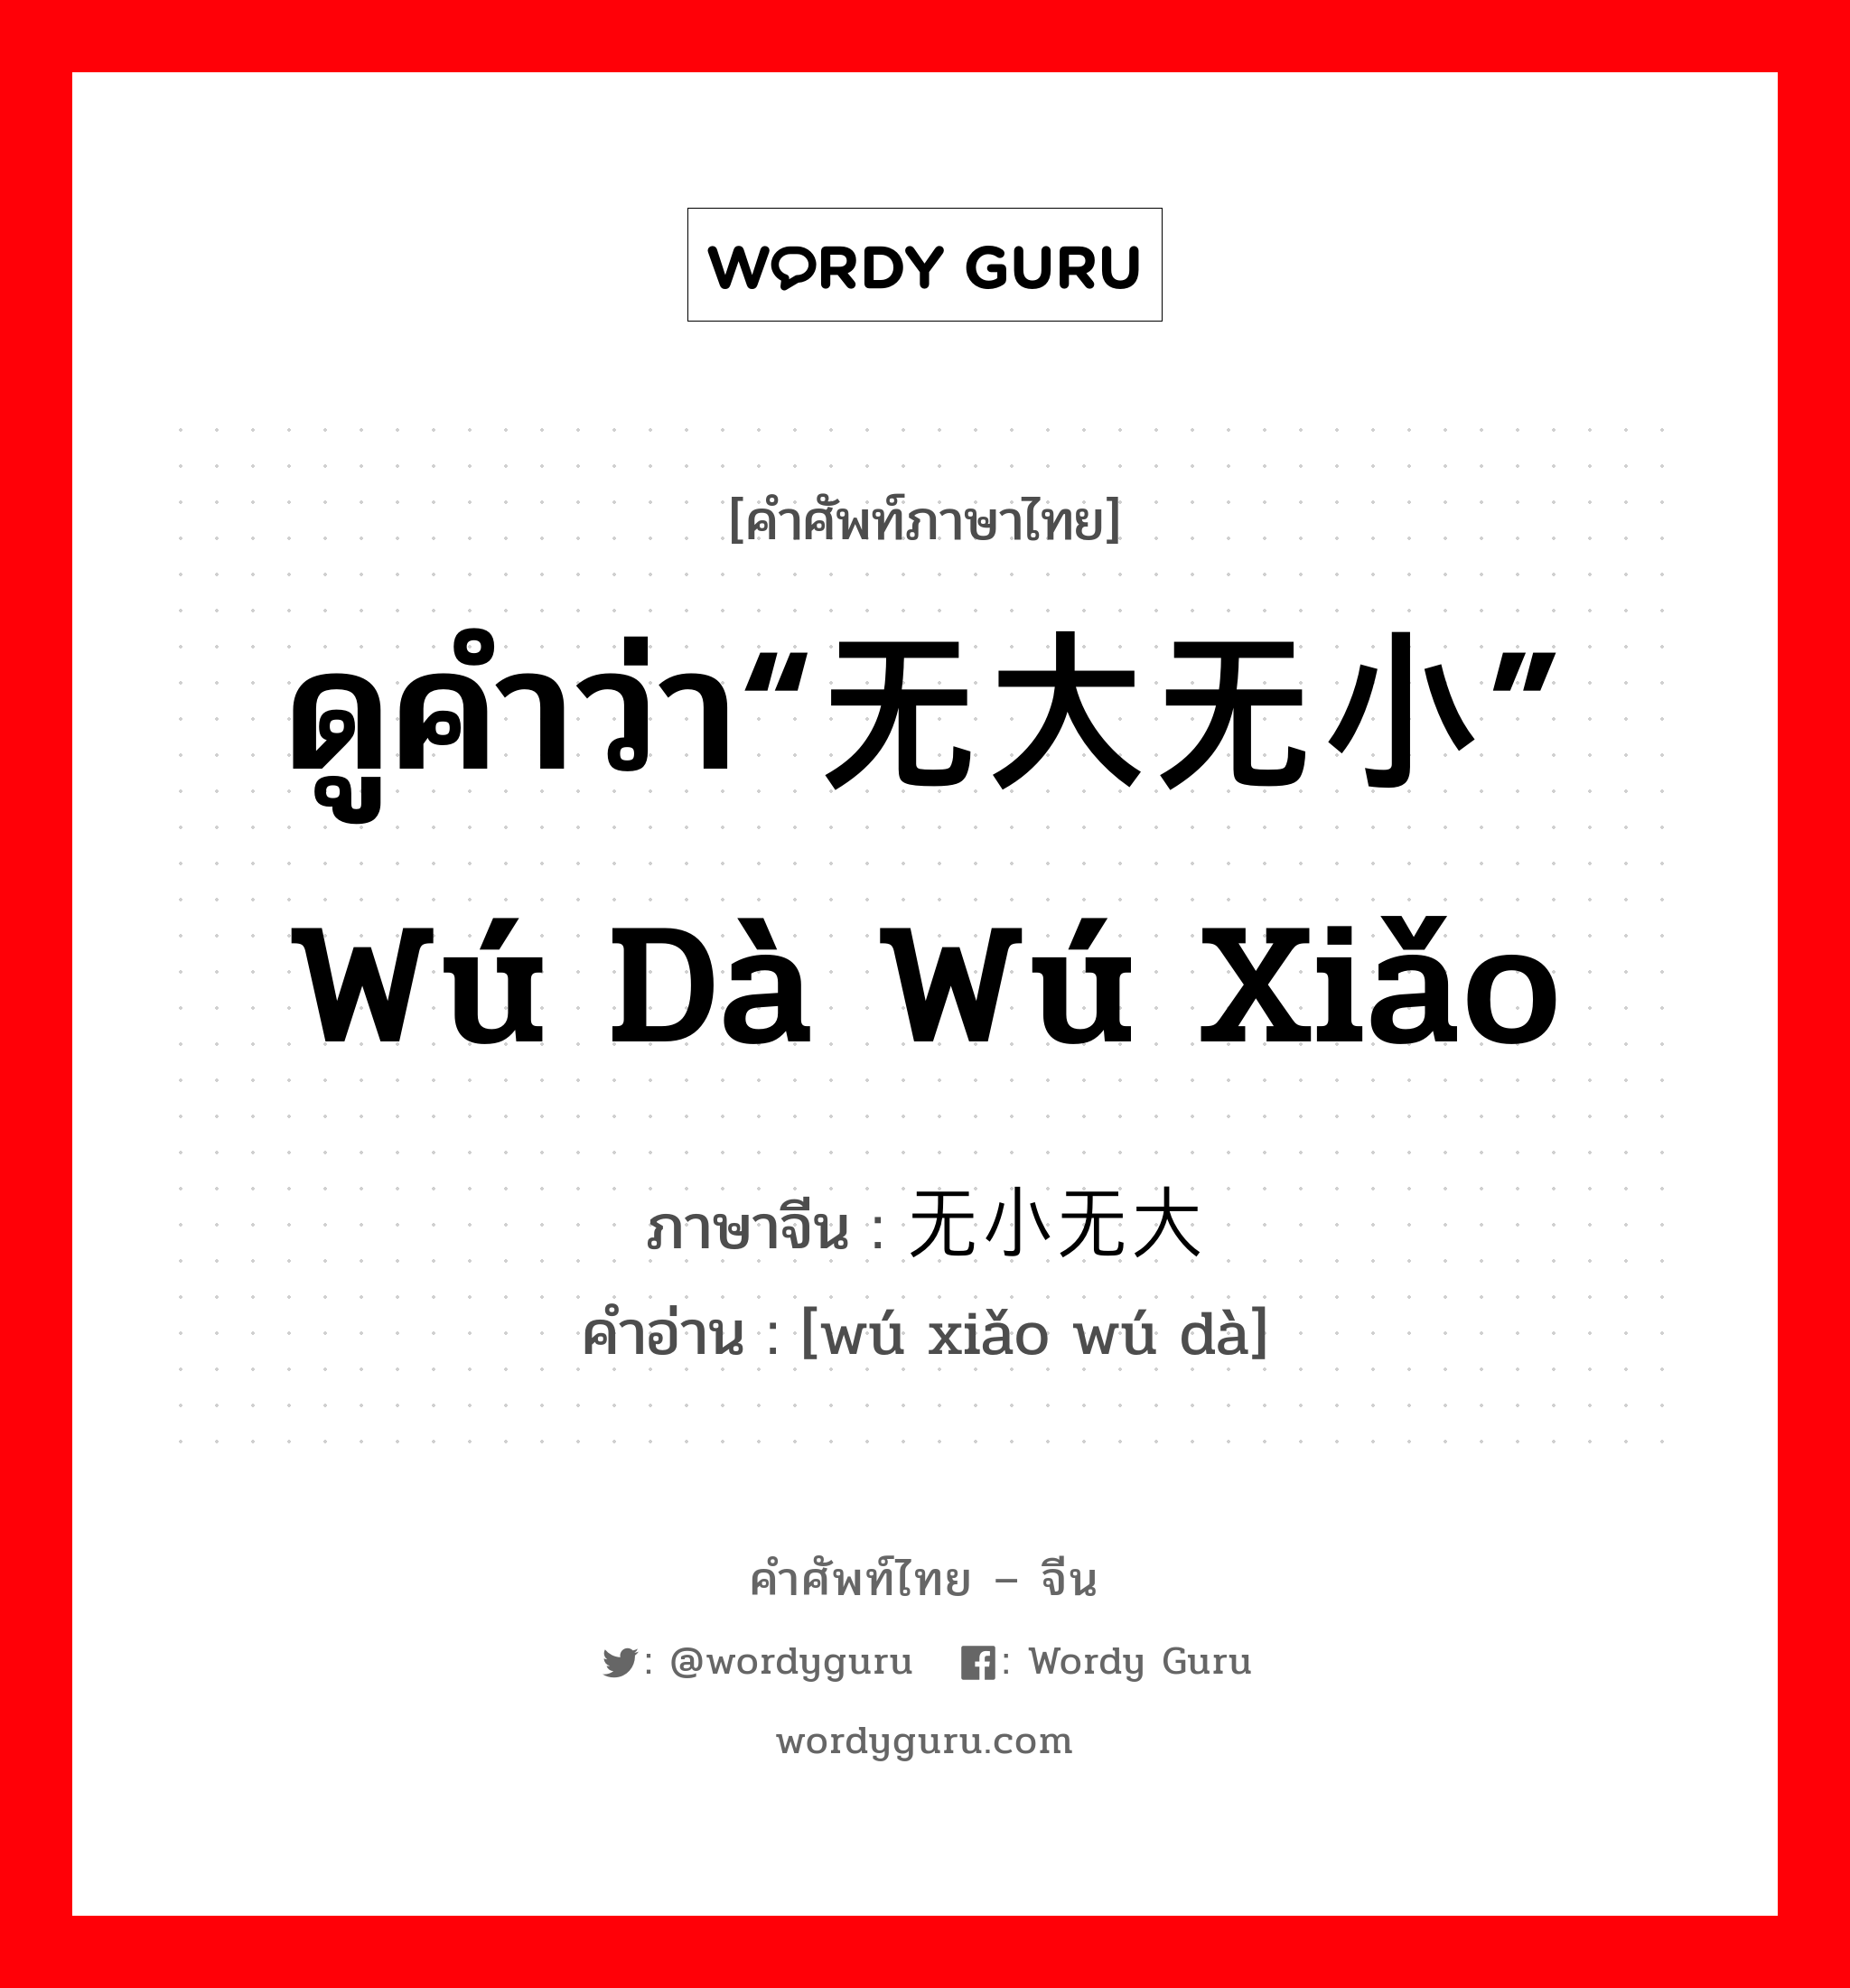 ดูคำว่า“无大无小” wú dà wú xiǎo ภาษาจีนคืออะไร, คำศัพท์ภาษาไทย - จีน ดูคำว่า“无大无小” wú dà wú xiǎo ภาษาจีน 无小无大 คำอ่าน [wú xiǎo wú dà]